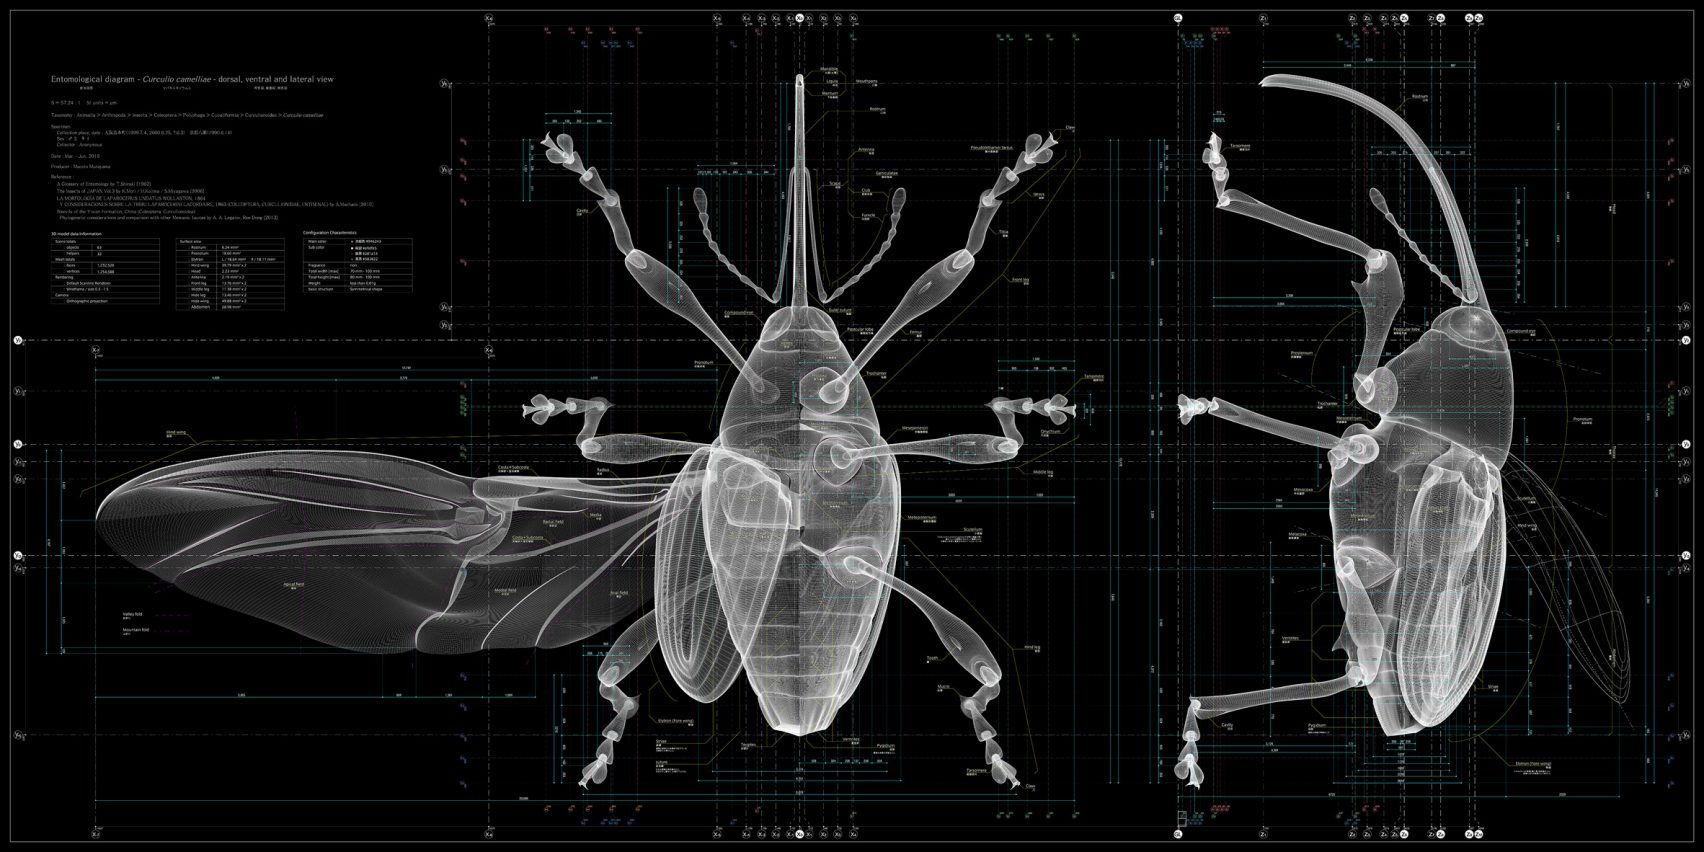 곤충에서 인류의 미래를 찾는 ‘곤충: 디자인의 본보기’전시